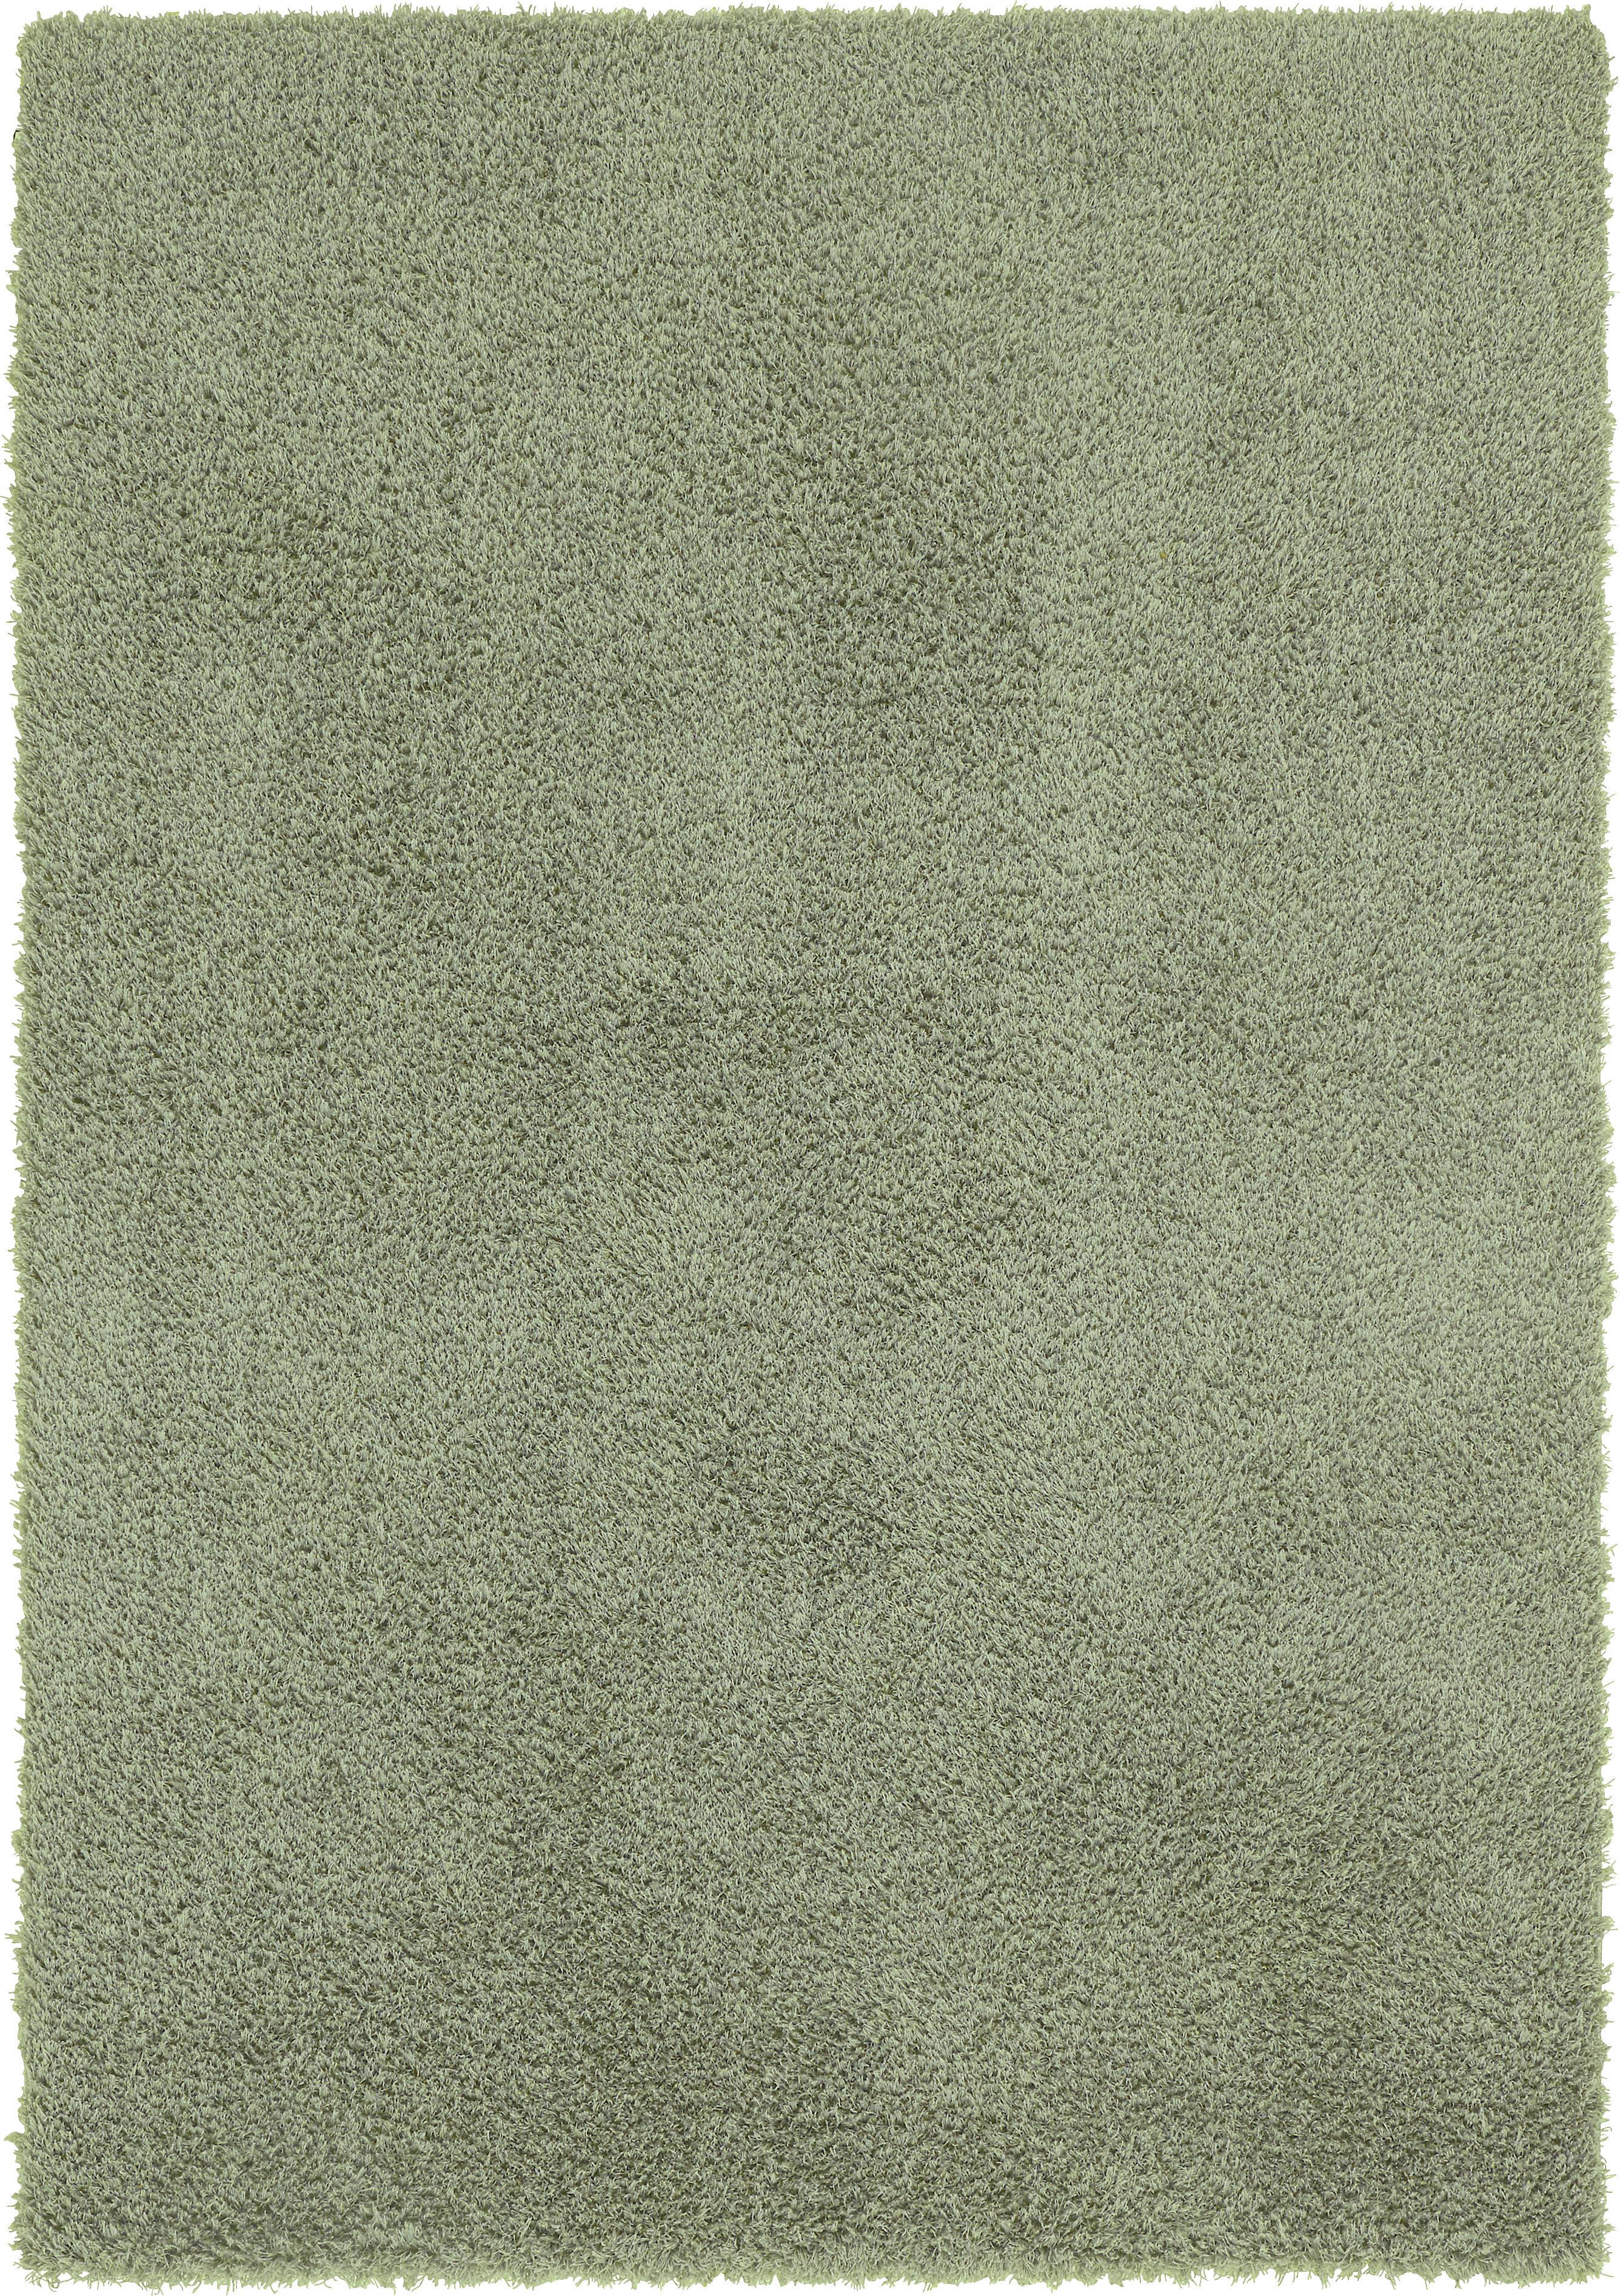 Čupavac Stefan 1 - zelena, Modern, tekstil (80/150cm) - Modern Living